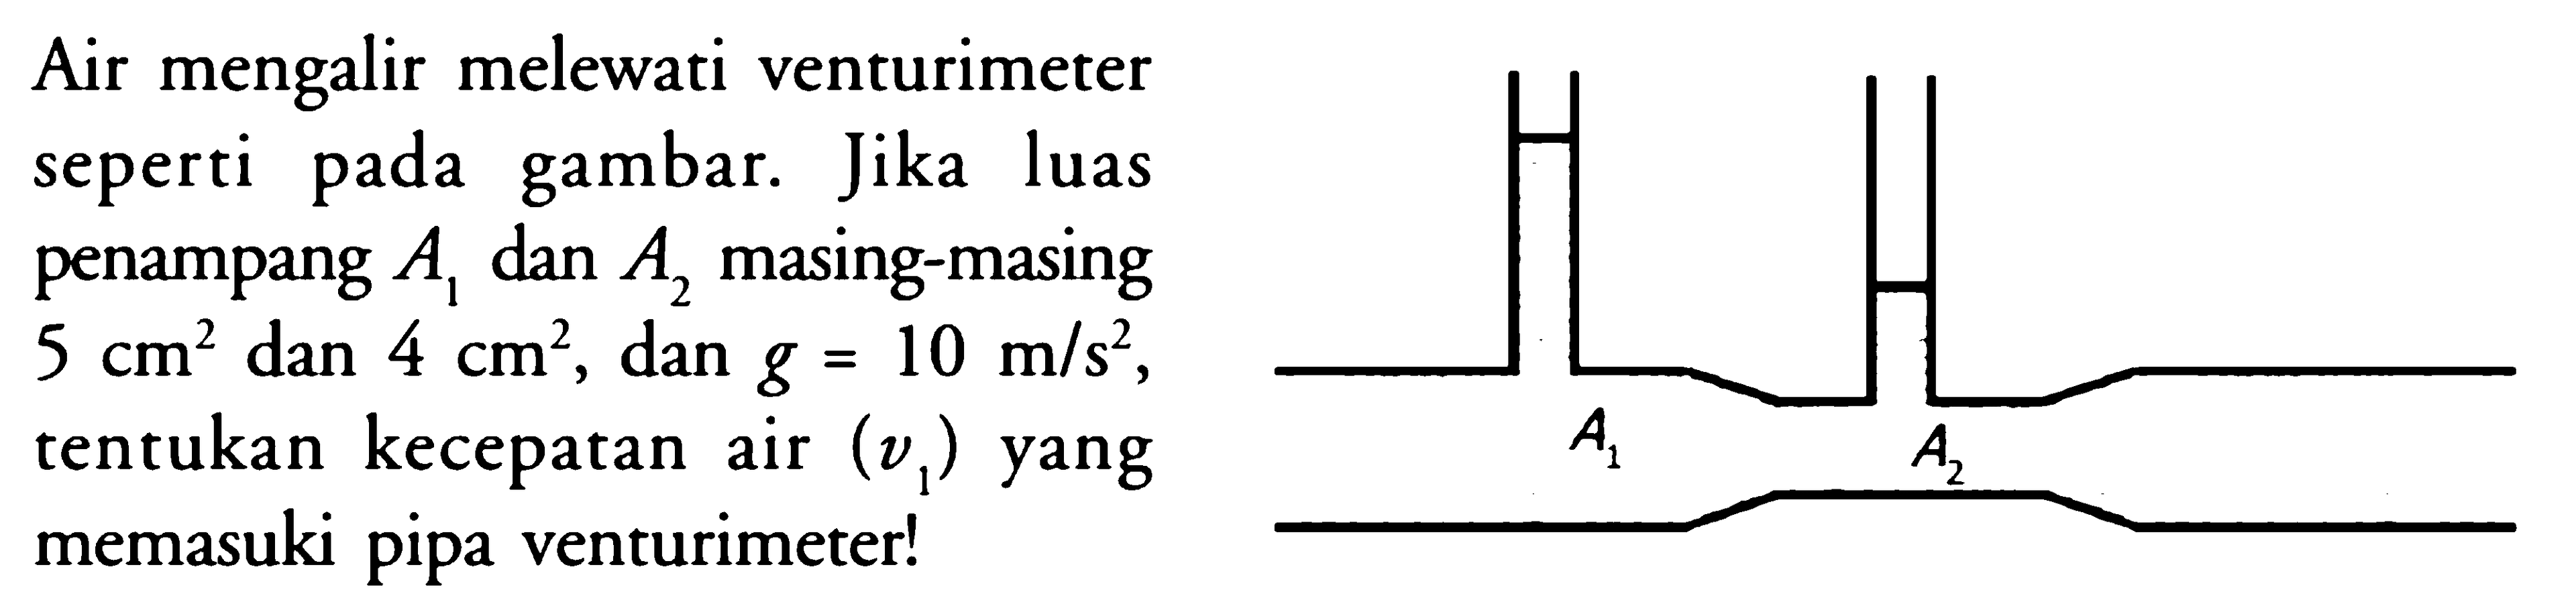 Air mengalir melewati venturimeter seperti pada gambar. Jika luas penampang A1 dan A2 masing-masing 5 cm^2 dan 4 cm^2, dan g=10 m/s^2, tentukan kecepatan air (v1) yang memasuki pipa venturimeter! 